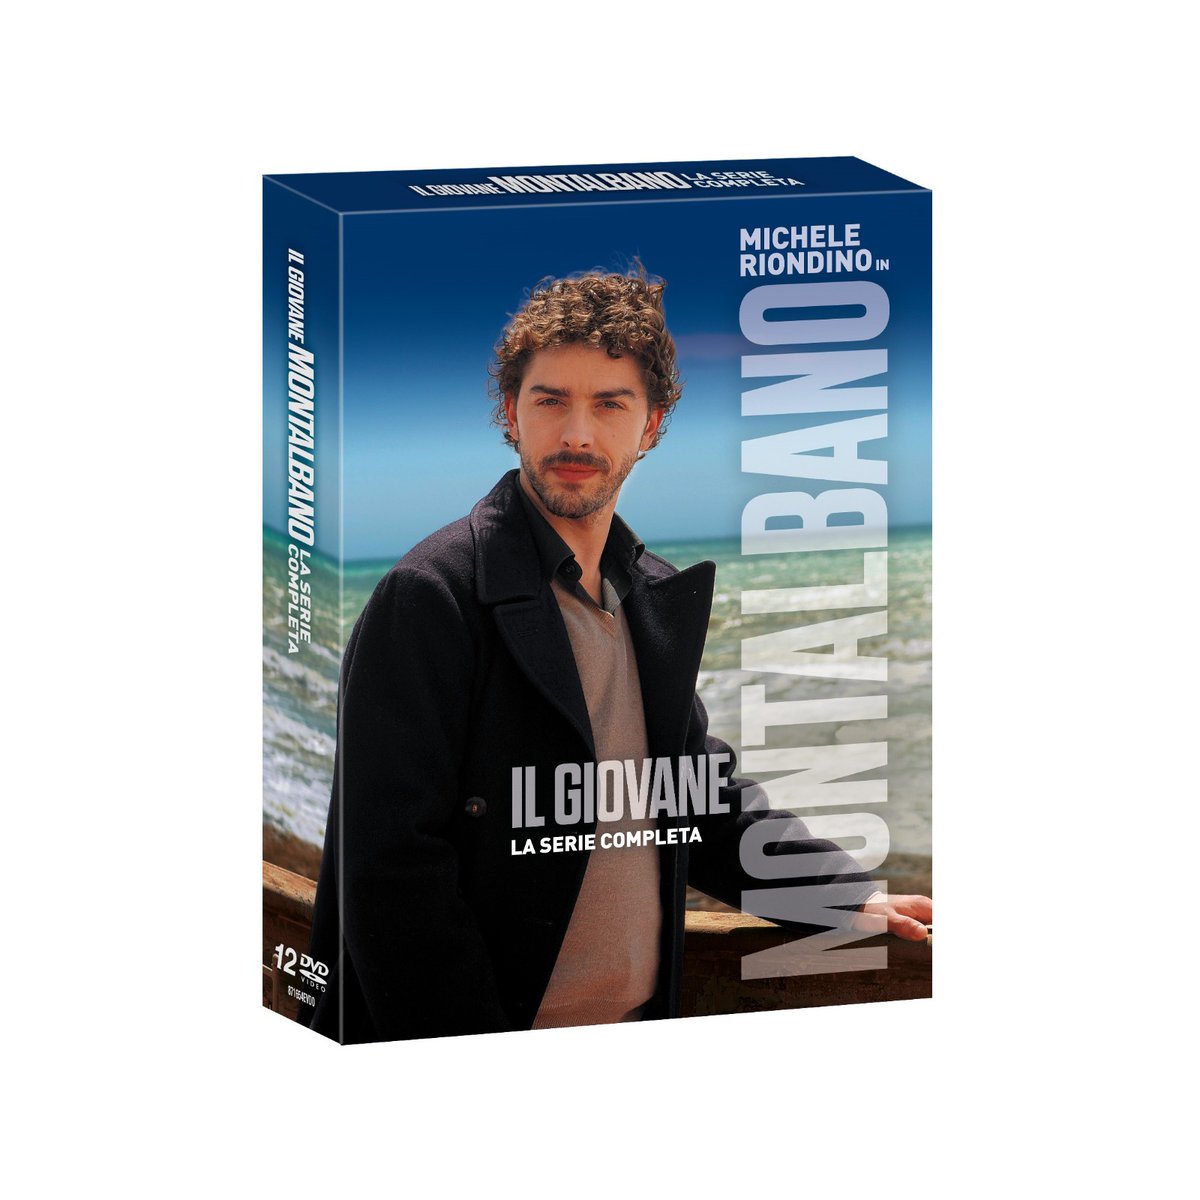 Il cofanetto DVD della serie completa de “Il giovane Montalbano” è disponibile nei negozi e negli store digitali da oggi! 👉 bit.ly/GiovaneMontalb…